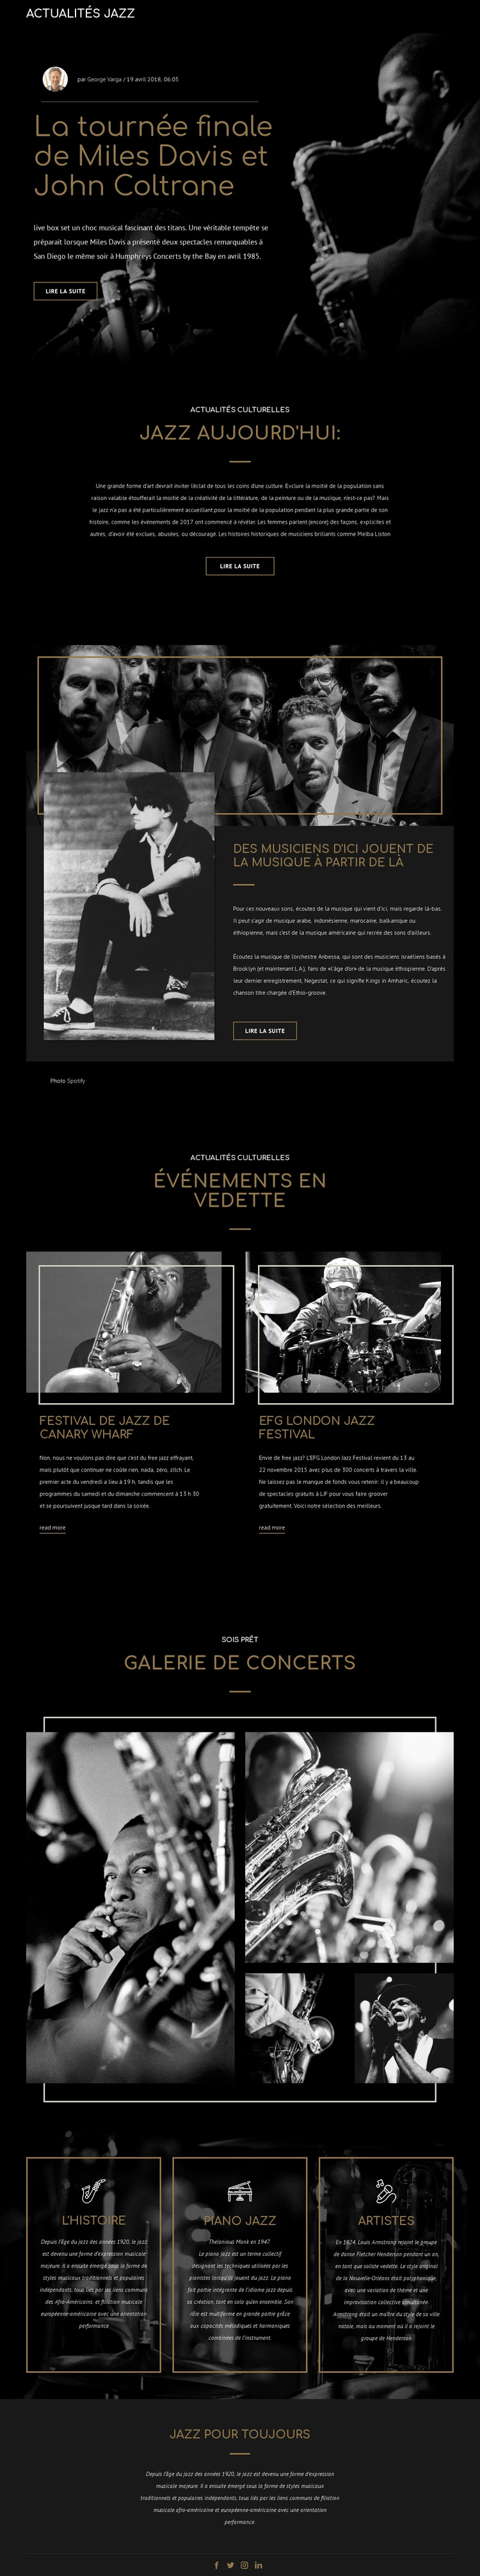 Legengs de la musique jazz Modèle de site Web